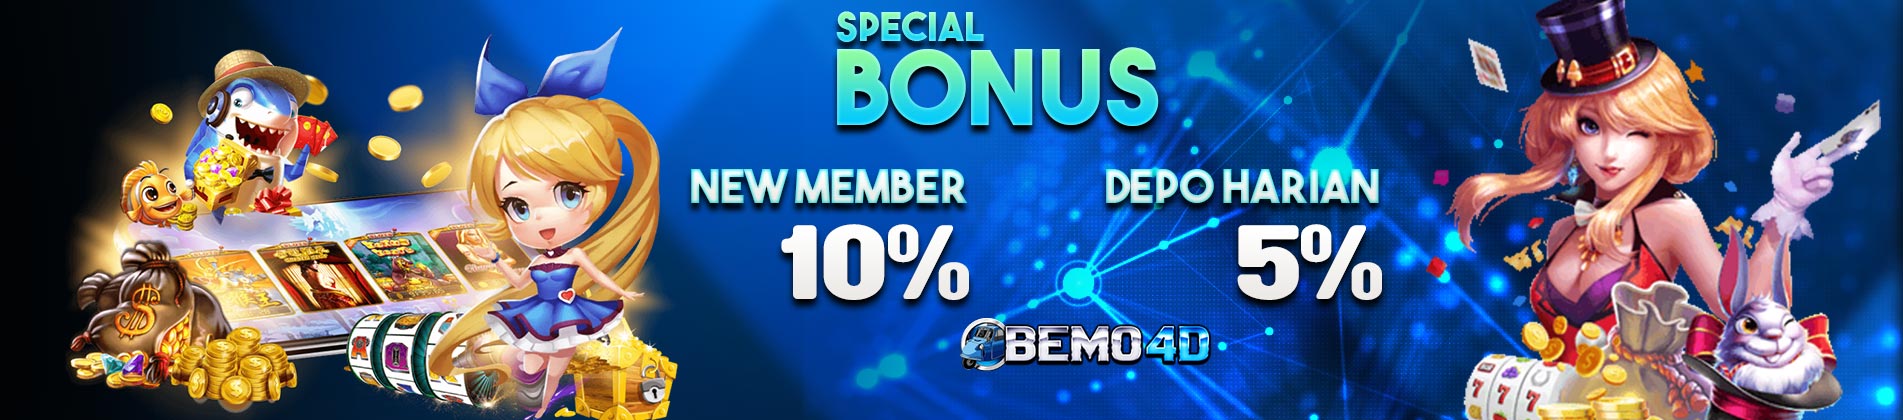 Bemo4d - Bonus